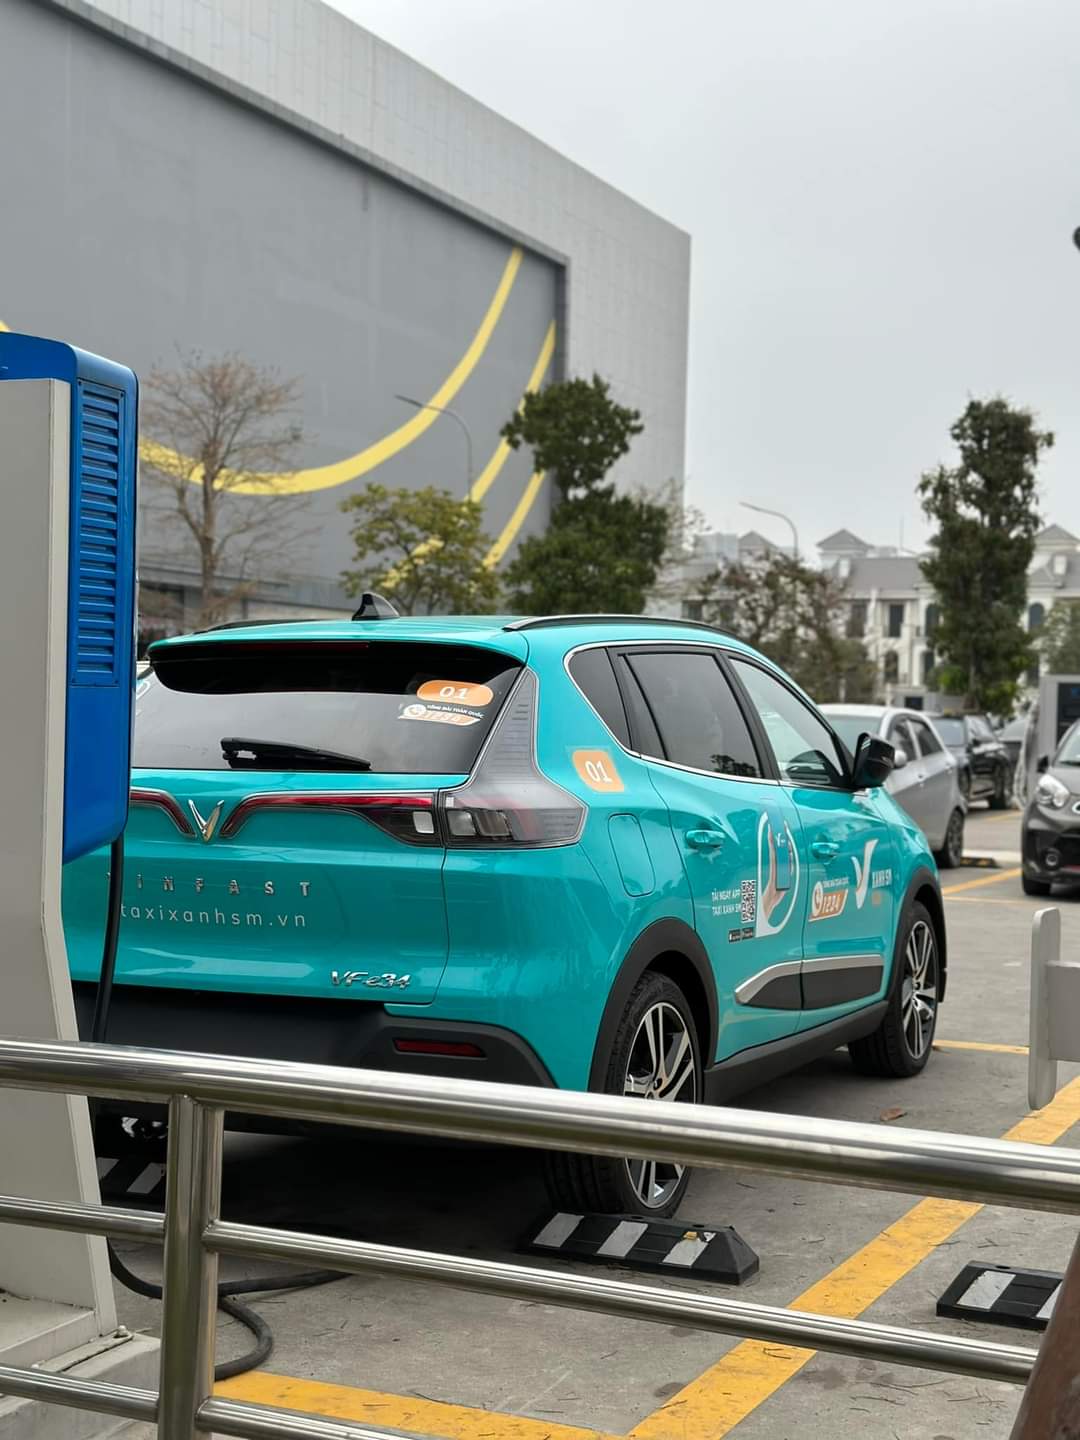 Lộ diện chiếc ô tô điện sẽ được tỷ phú Phạm Nhật Vượng dùng làm dịch vụ taxi: Mẫu mã, màu sắc ra sao? - Ảnh 2.